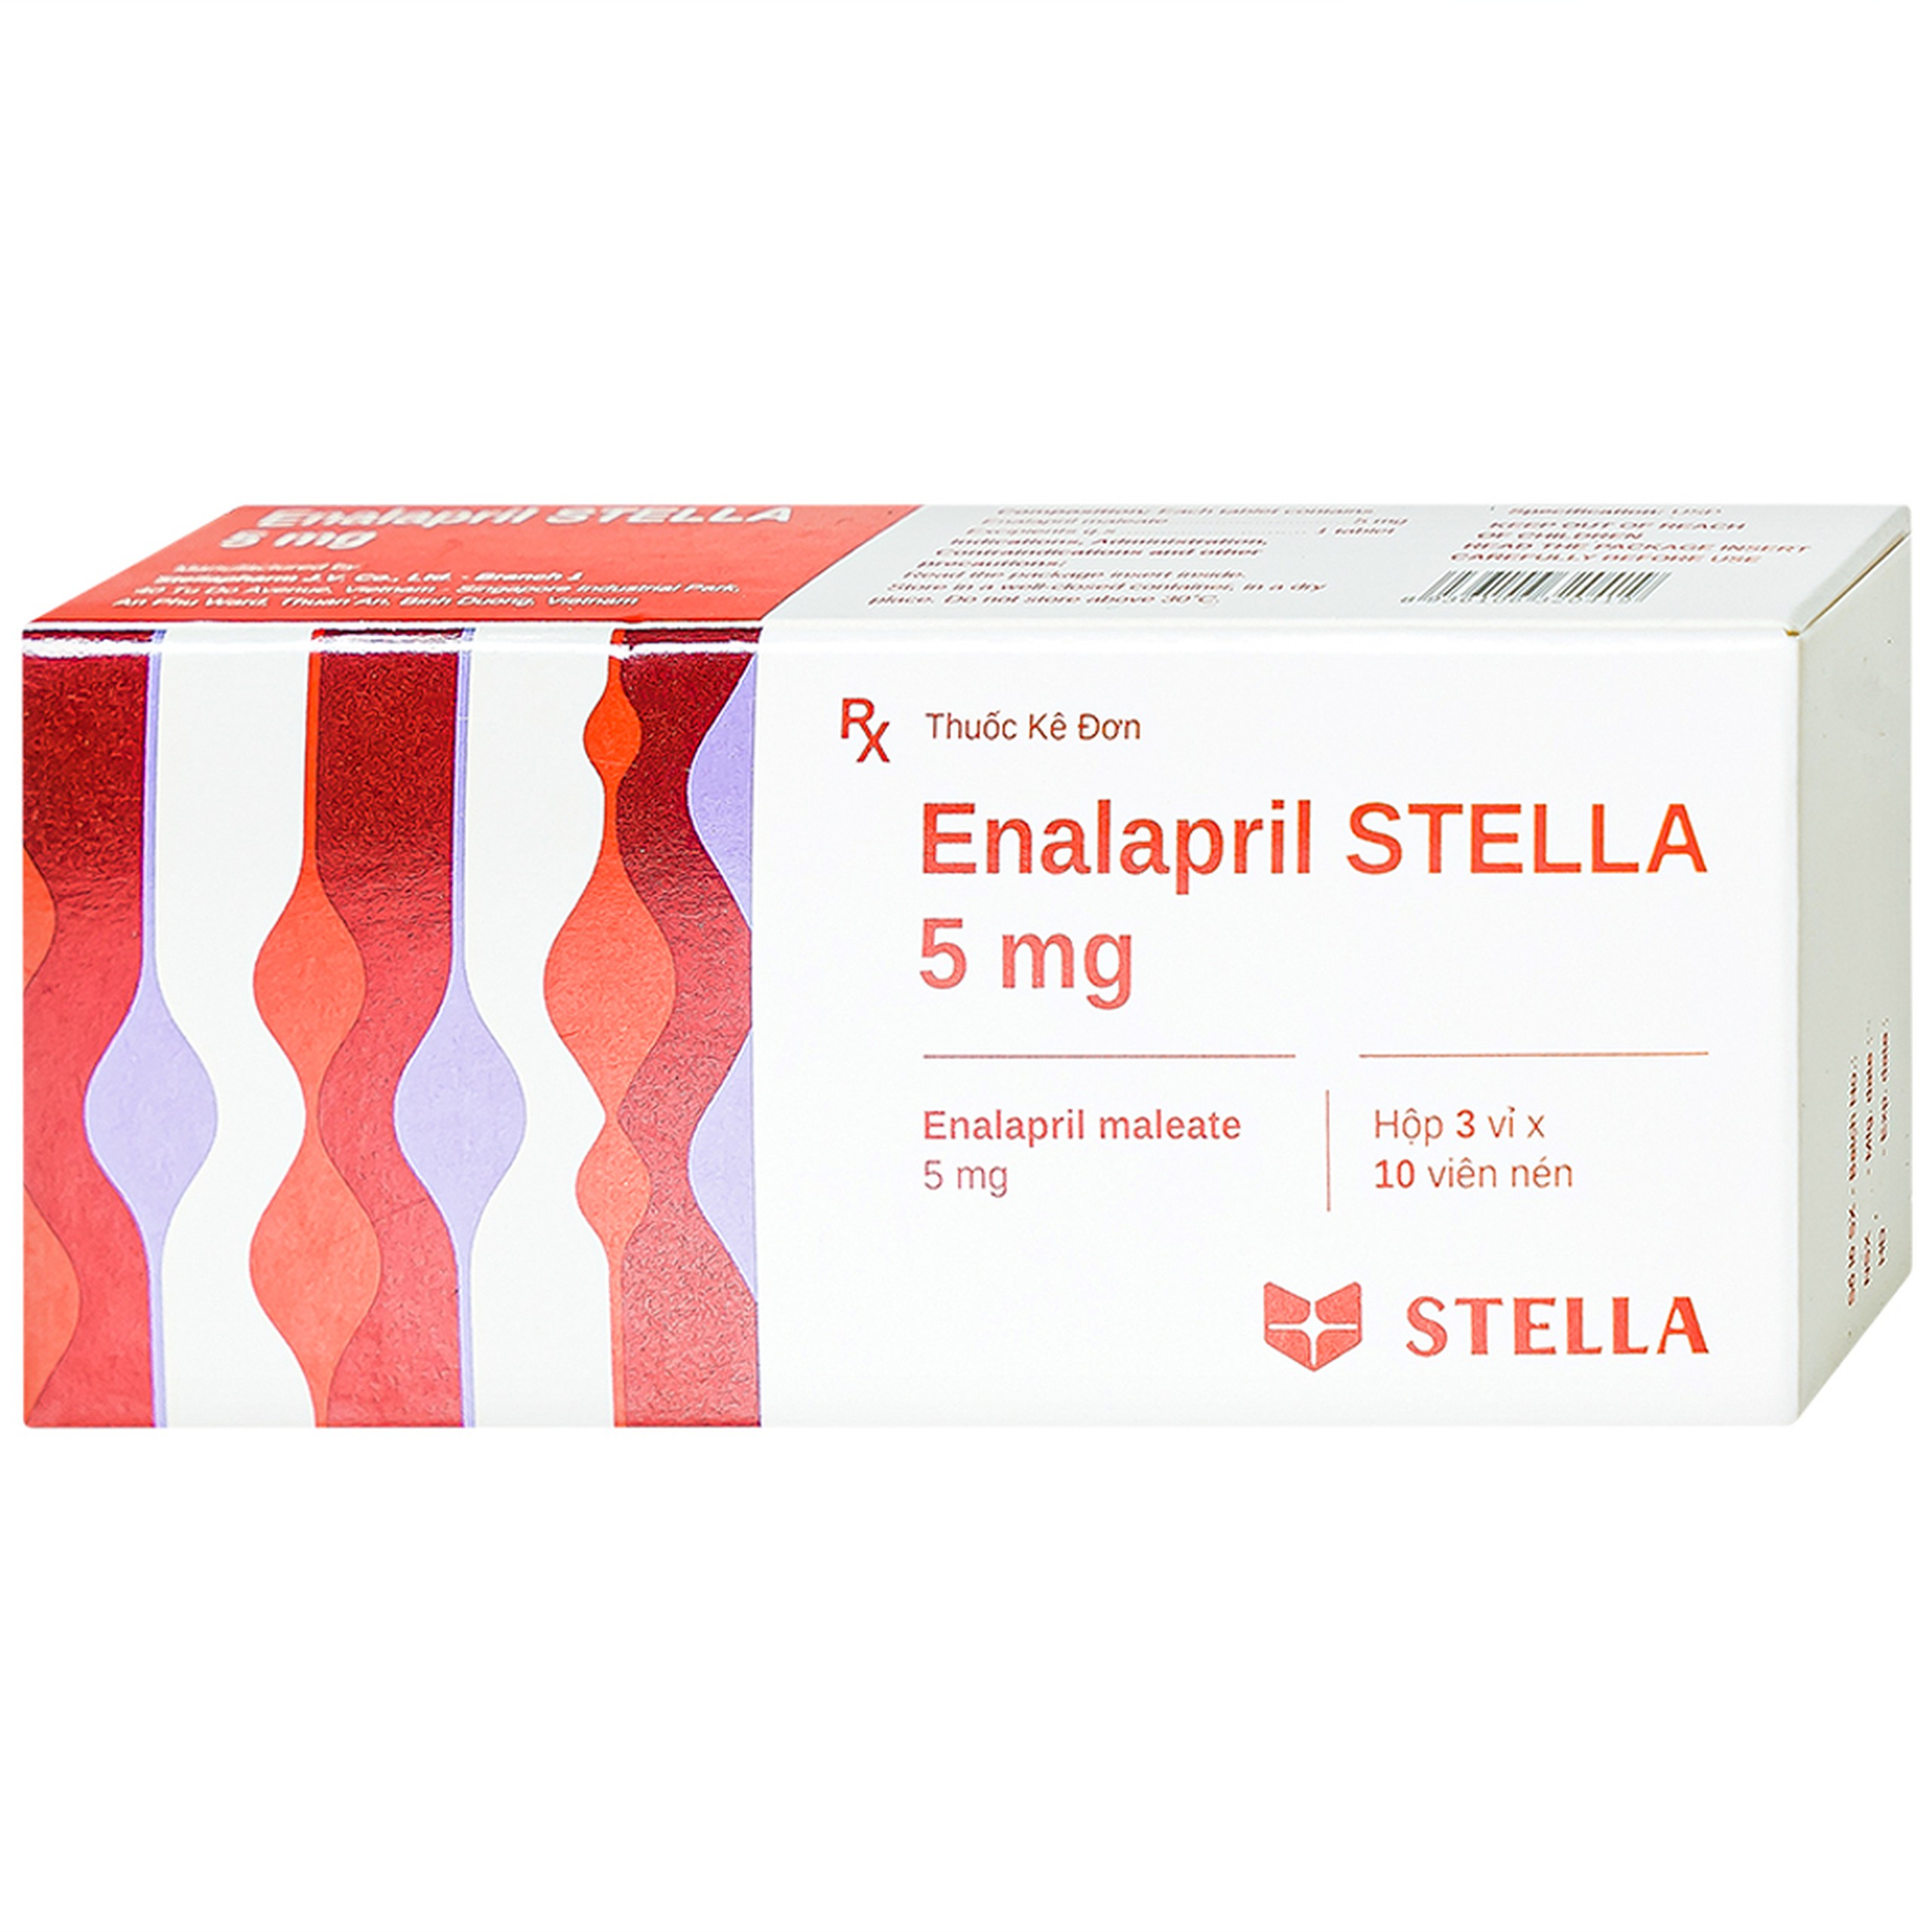 Thuốc Enalapril Stella 5mg điều trị tăng huyết áp, suy tim sung huyết (3 vỉ x 10 viên)